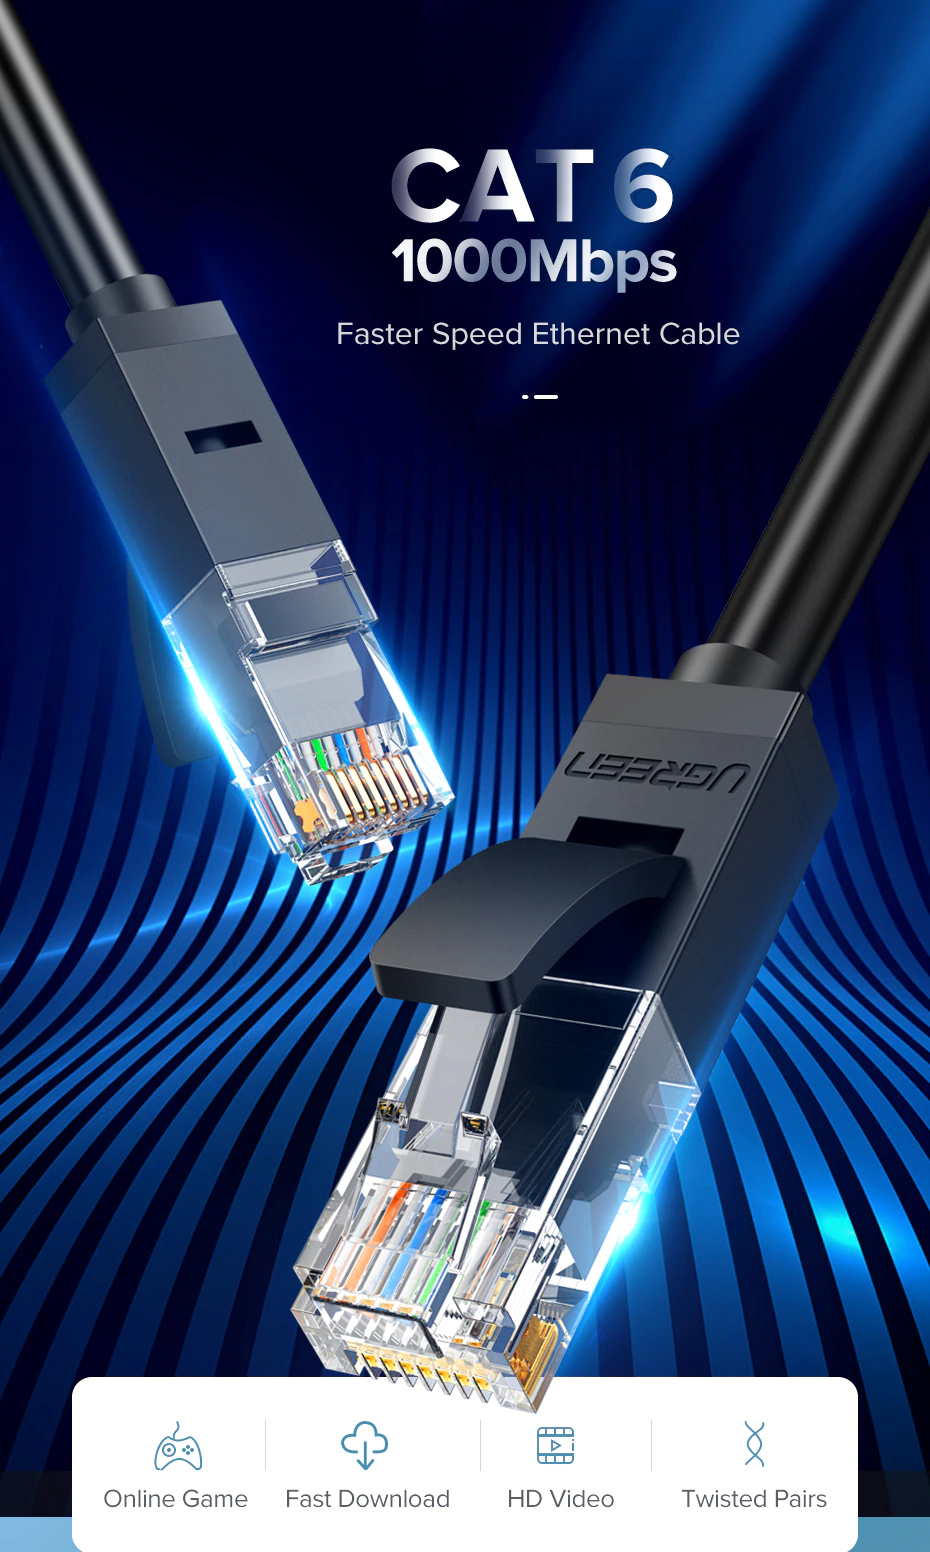 ภาพประกอบของ UGREEN รุ่น NW102 สายแลน Cat6 LAN Ethernet Cable Gigabit RJ45 รองรับ 1000Mbps ความยาว 50CM-10M มี 2 สี ดำ/น้ำเงิน